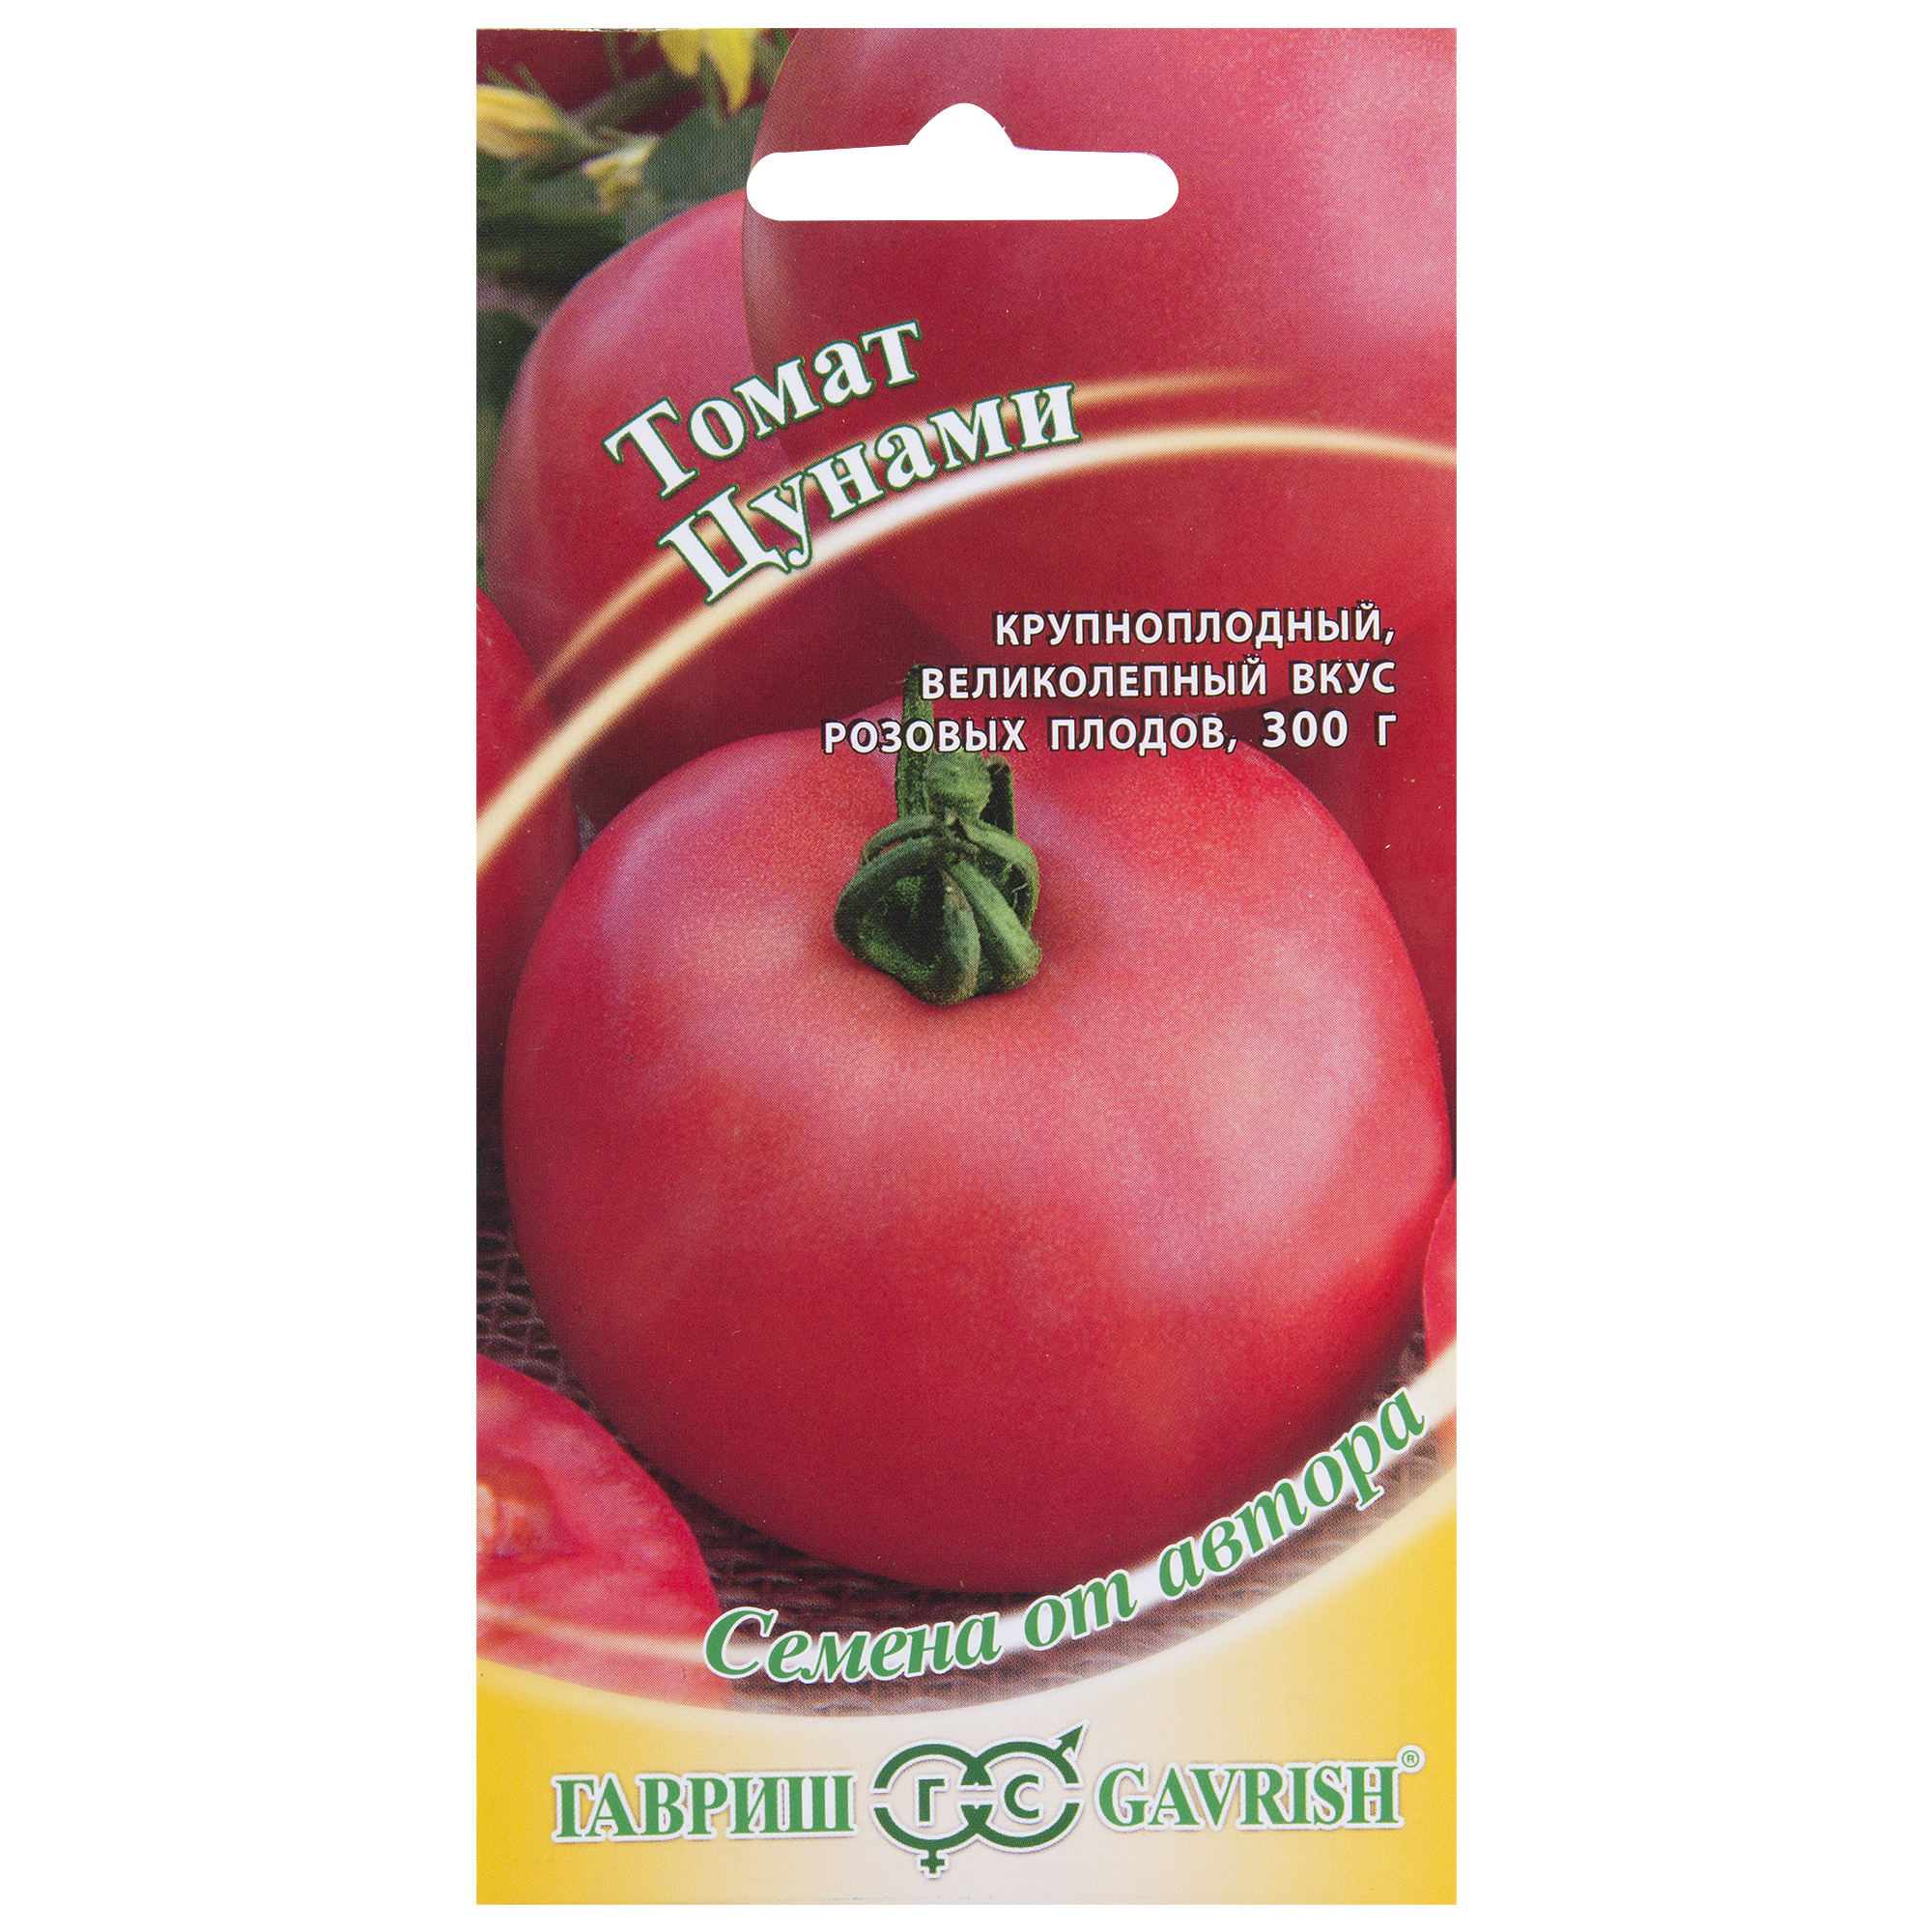 Семена Томат «Цунами» - купить в Ростове-на-Дону по низкой цене, описание,фото и отзывы в Леруа Мерлен